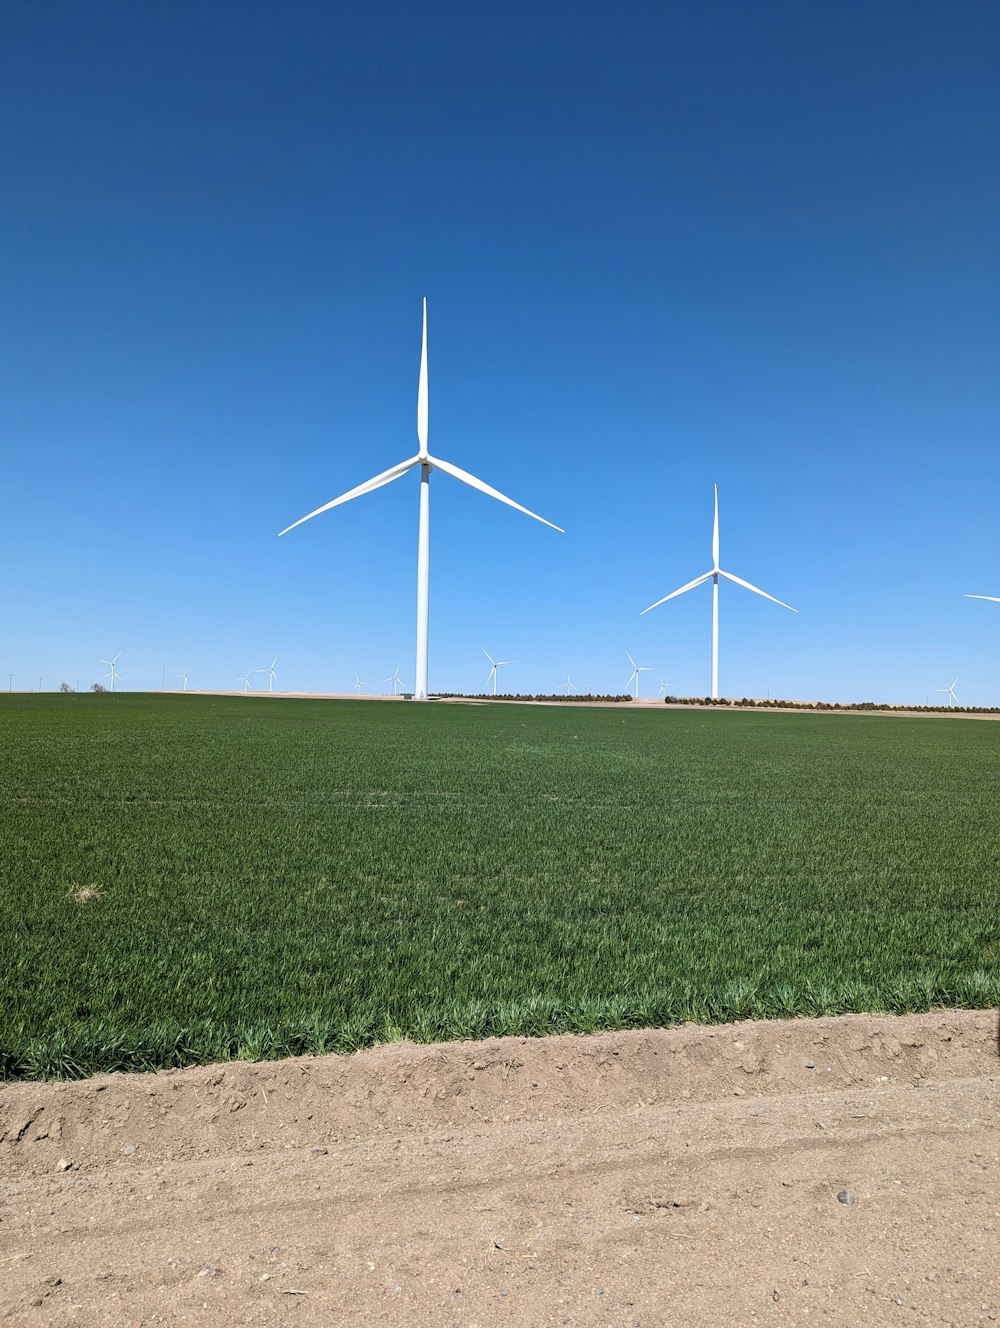 um campo de grama verde com três turbinas eólicas ao fundo